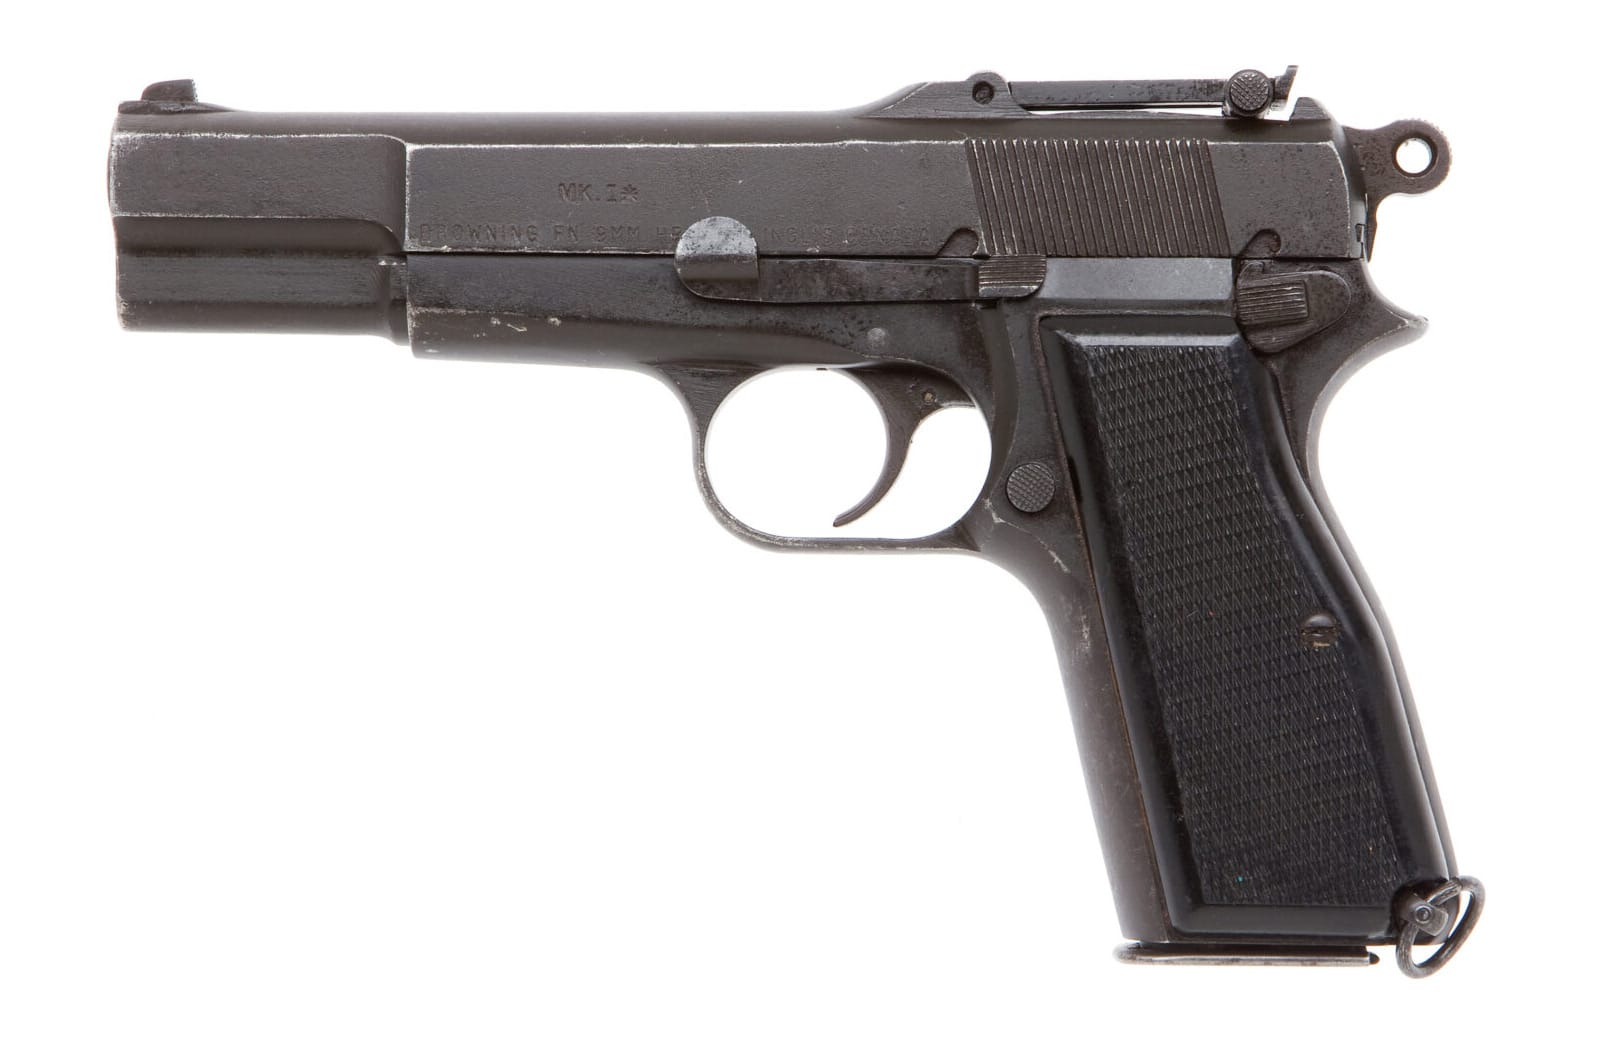 Inglis Mk 1 Hi-Power pistol